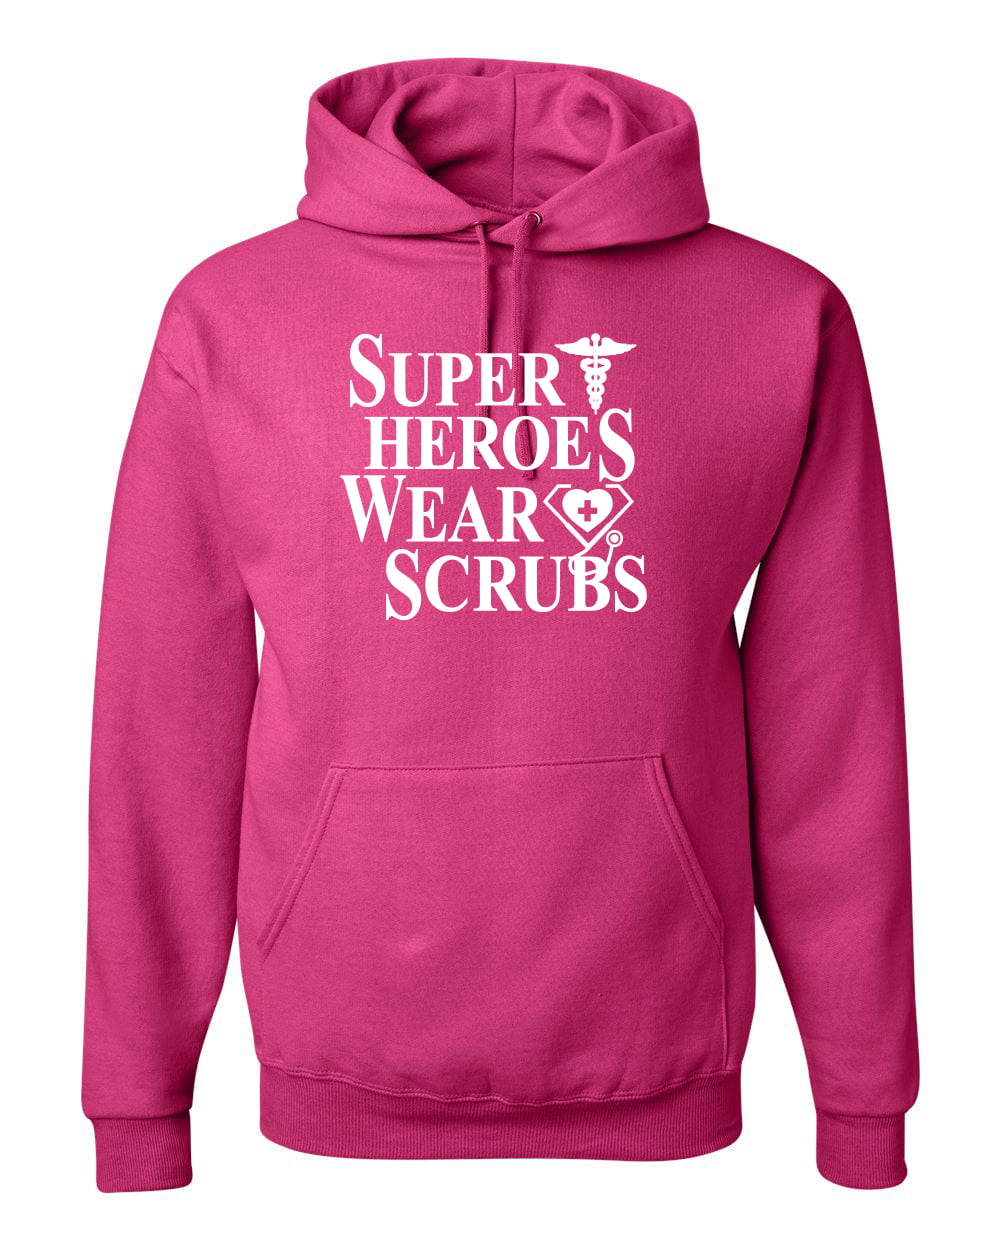 Real Heroes Wear Scrubs Women Long Sleeve Hoodie Black Hooded Sweatshirt 